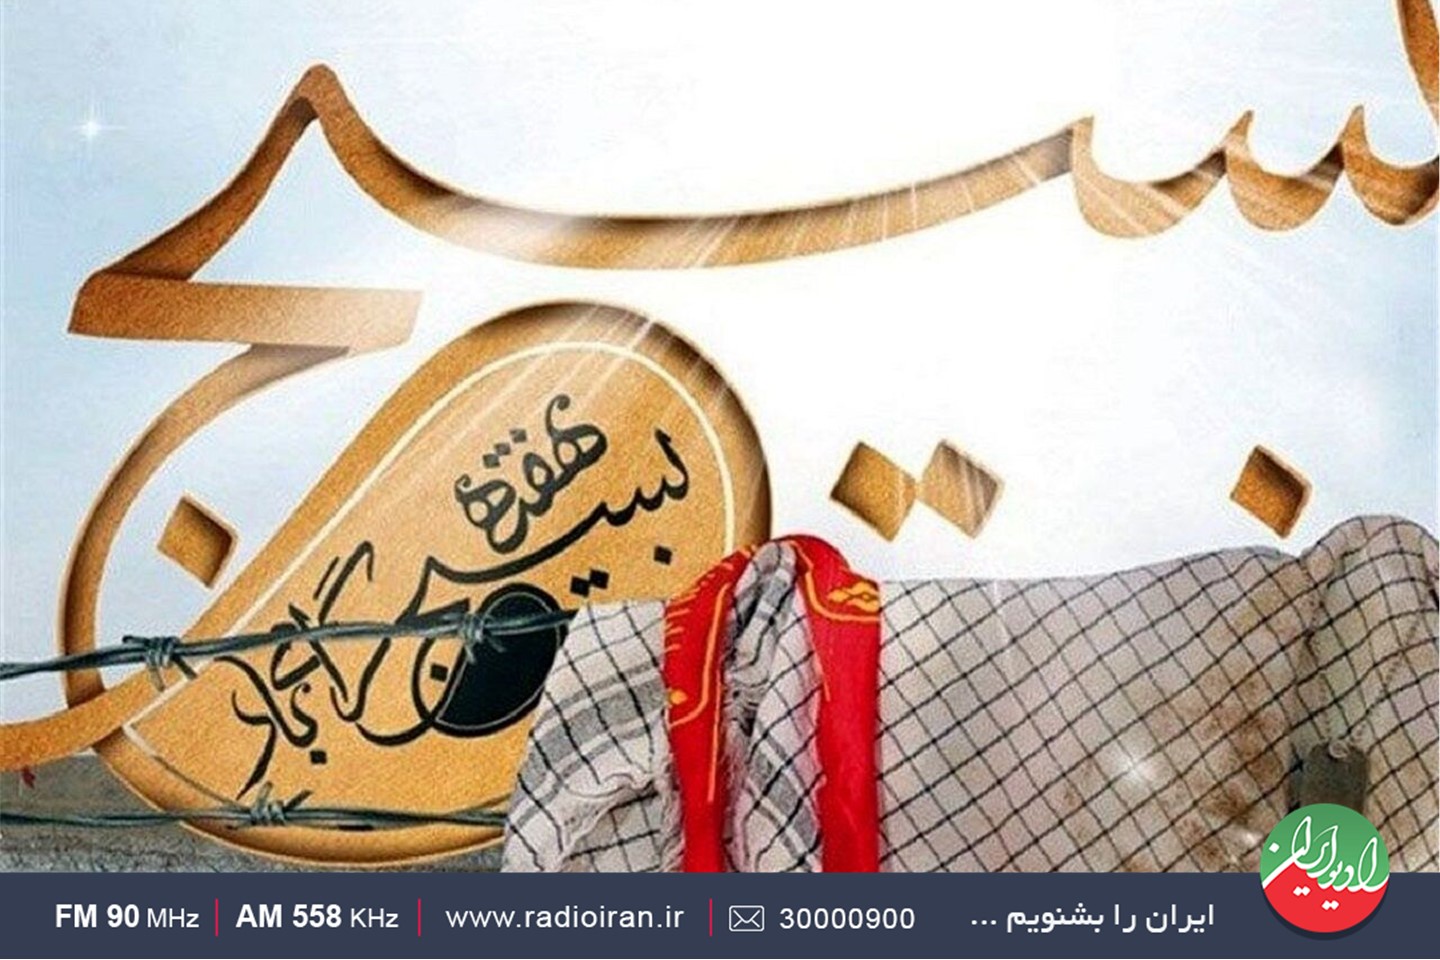 تدارک رادیو ایران به مناسبت گرامیداشت «هفته بسیج»